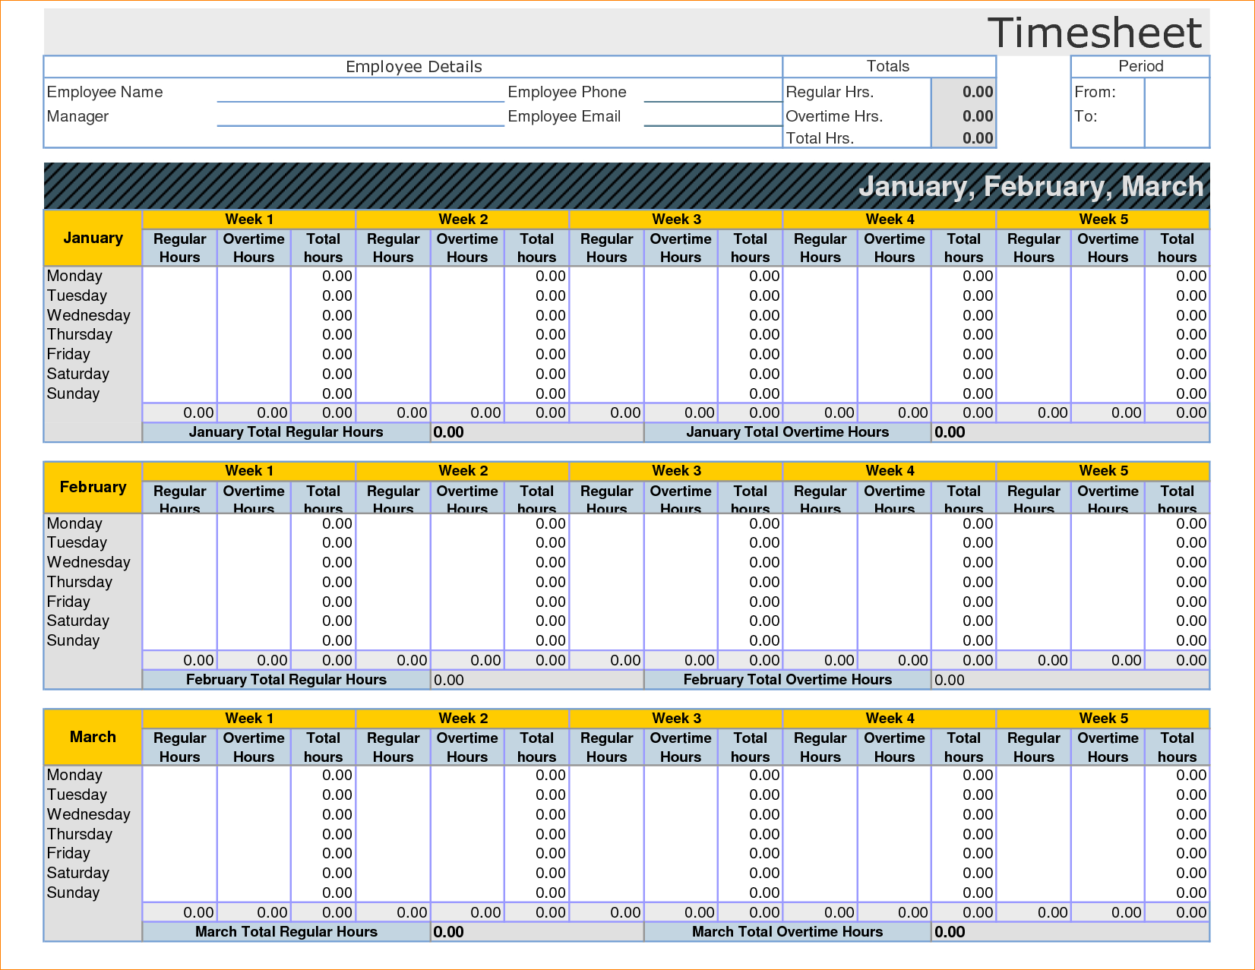 googl spreadsheet for employee hours